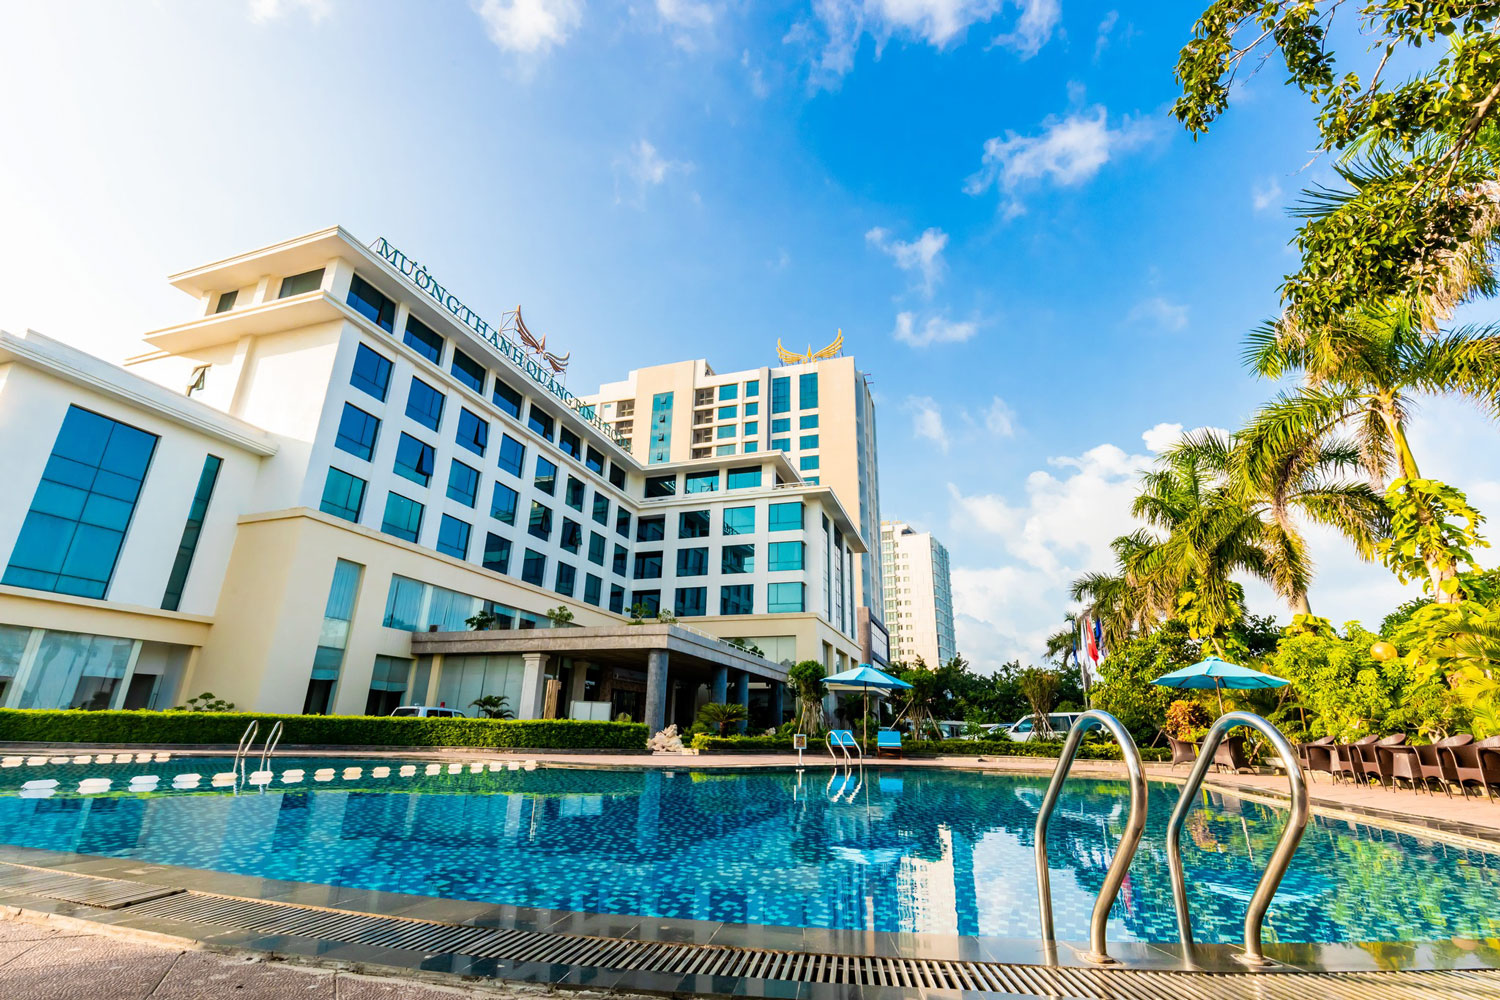 Khách sạn Mường Thanh có đầy đủ các cơ sở vật chất, đặc biệt là hồ bơi rộng.